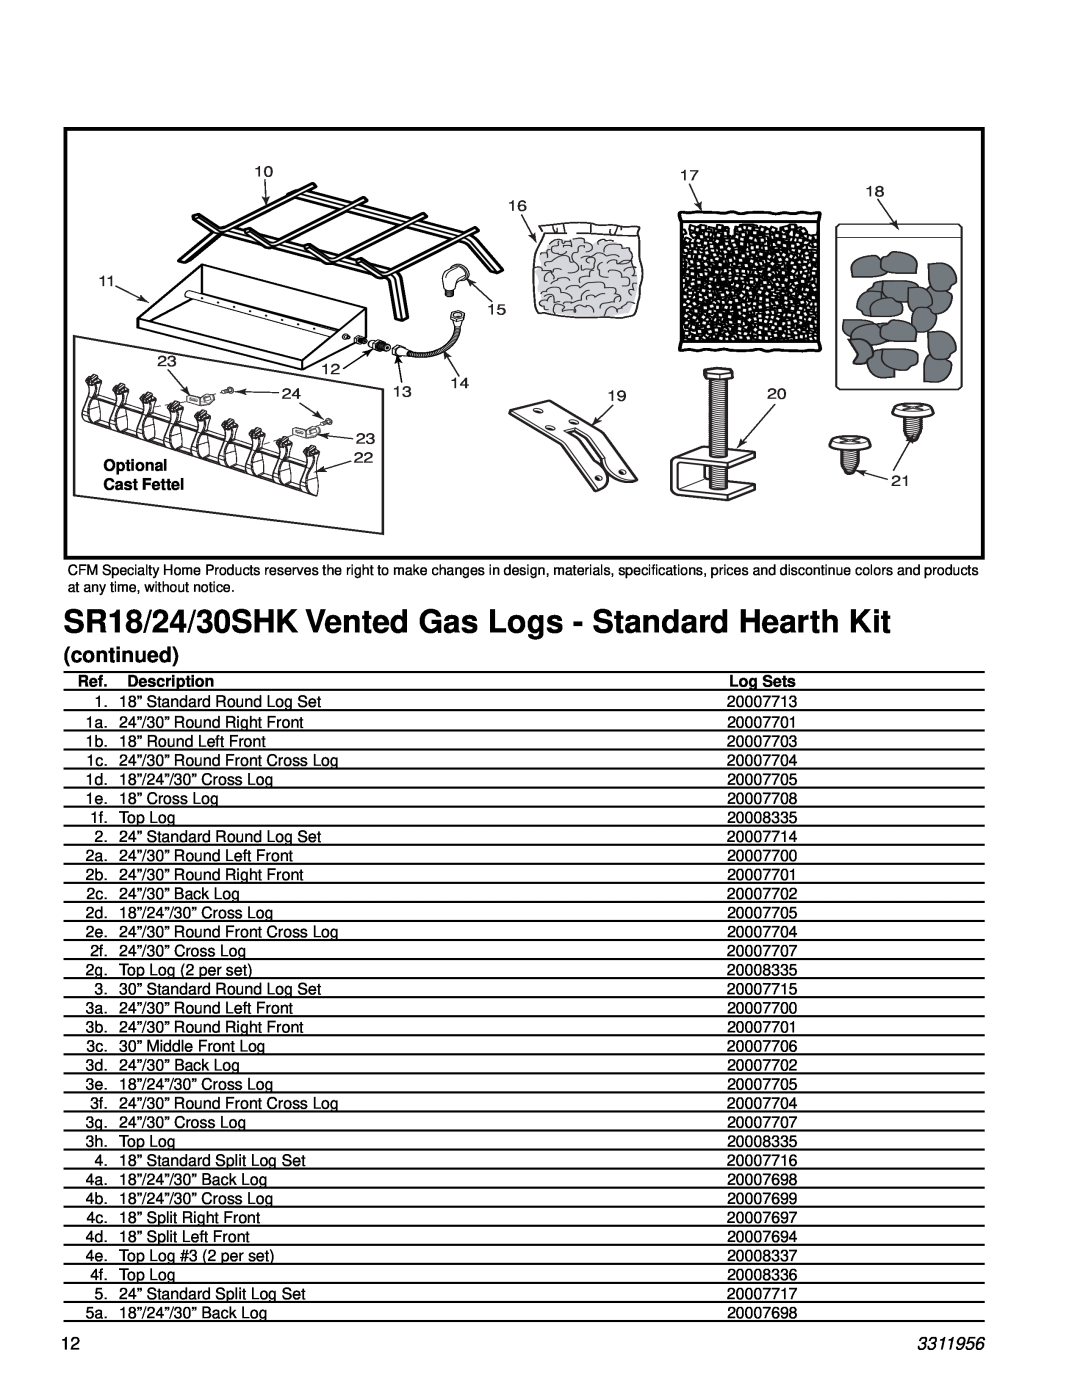 Vermont Casting SR24SHK, SR18SHK, SR30SHK manual continued, 3311956, Optional, Cast Fettel, Description, Log Sets 